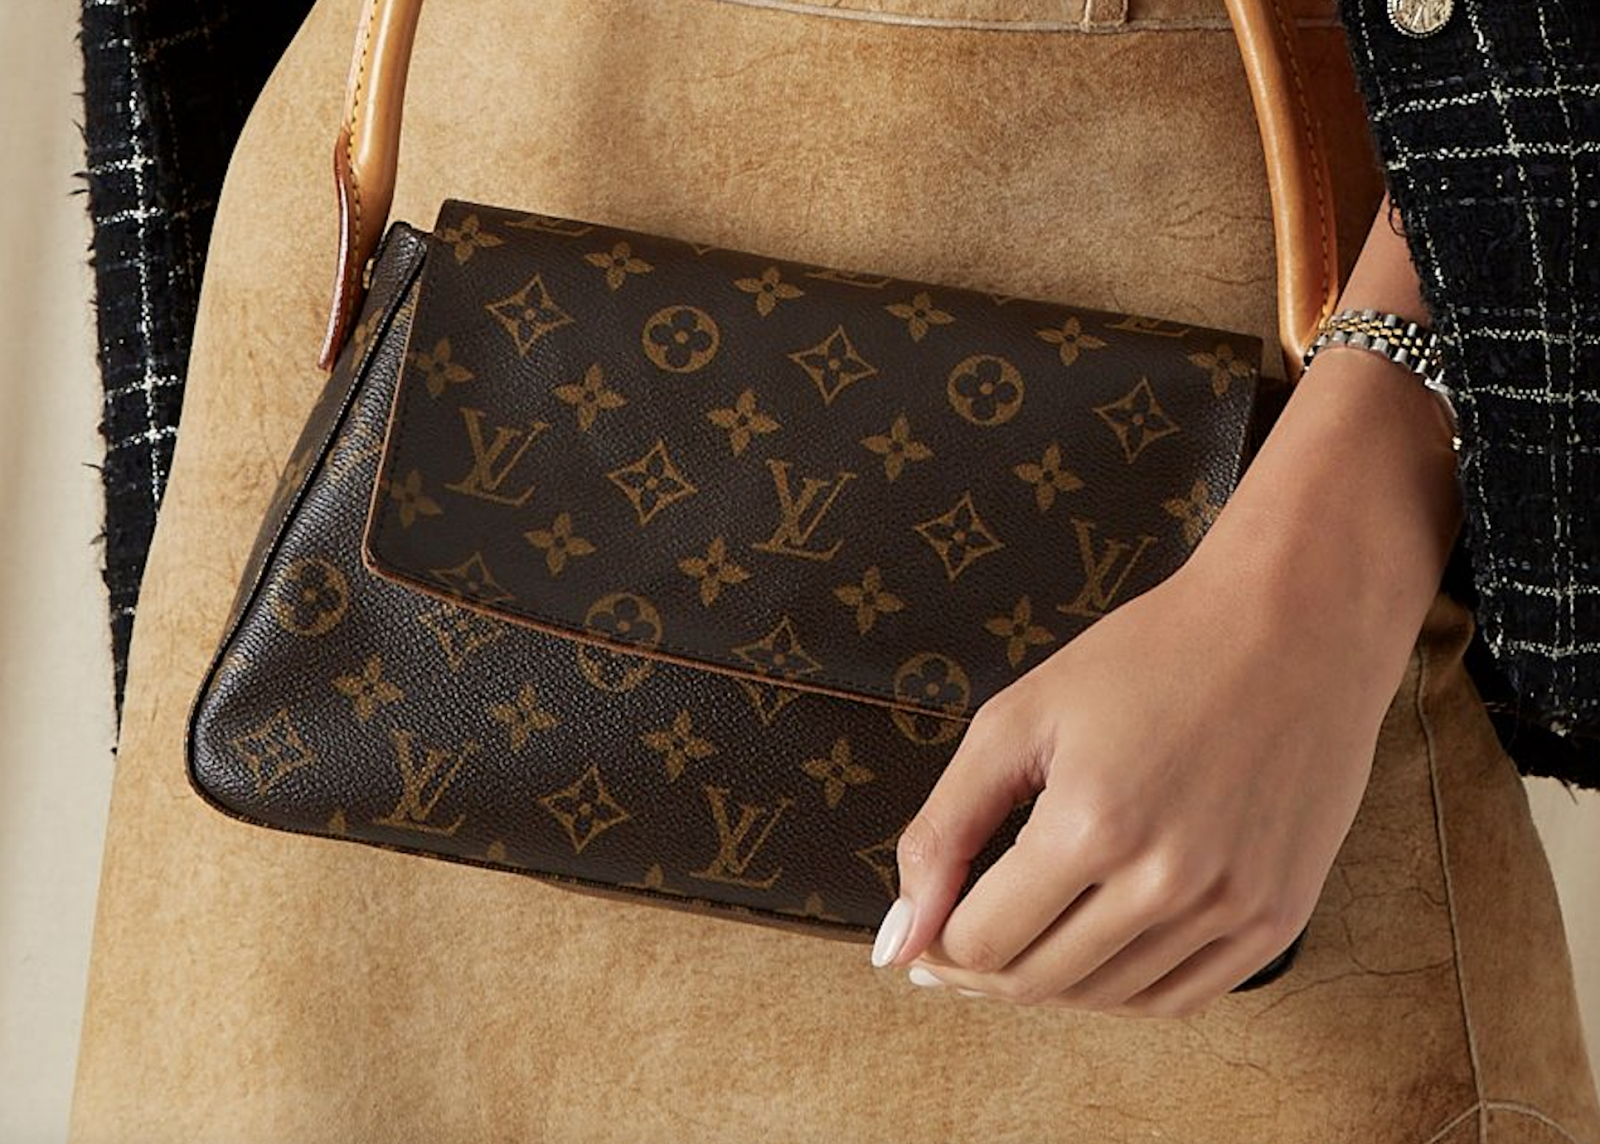 A Louis Vuitton handbag